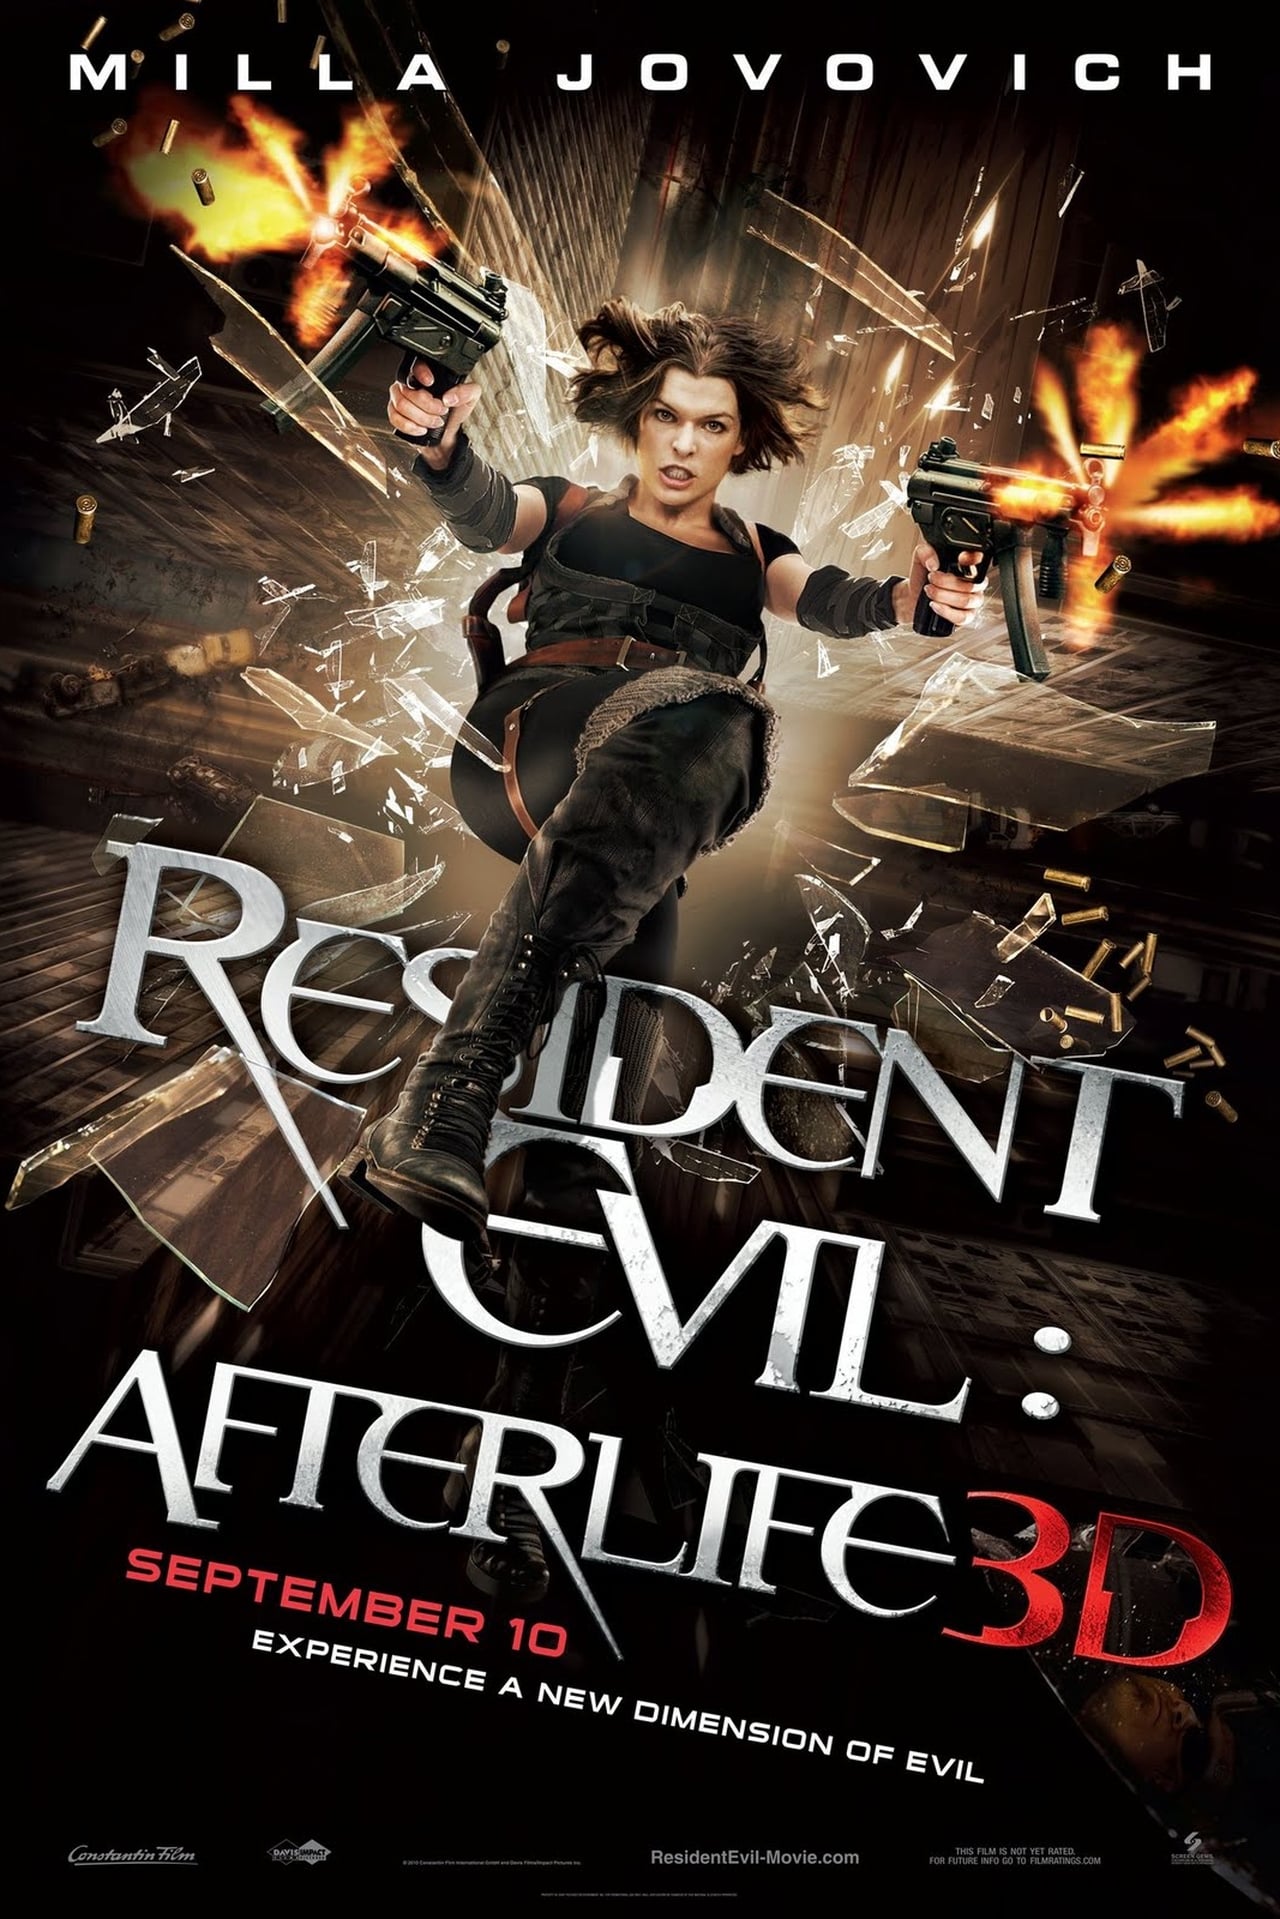 Resident Evil: Afterlife (2010) 640Kbps 23.976Fps 48Khz 5.1Ch BluRay Turkish Audio TAC